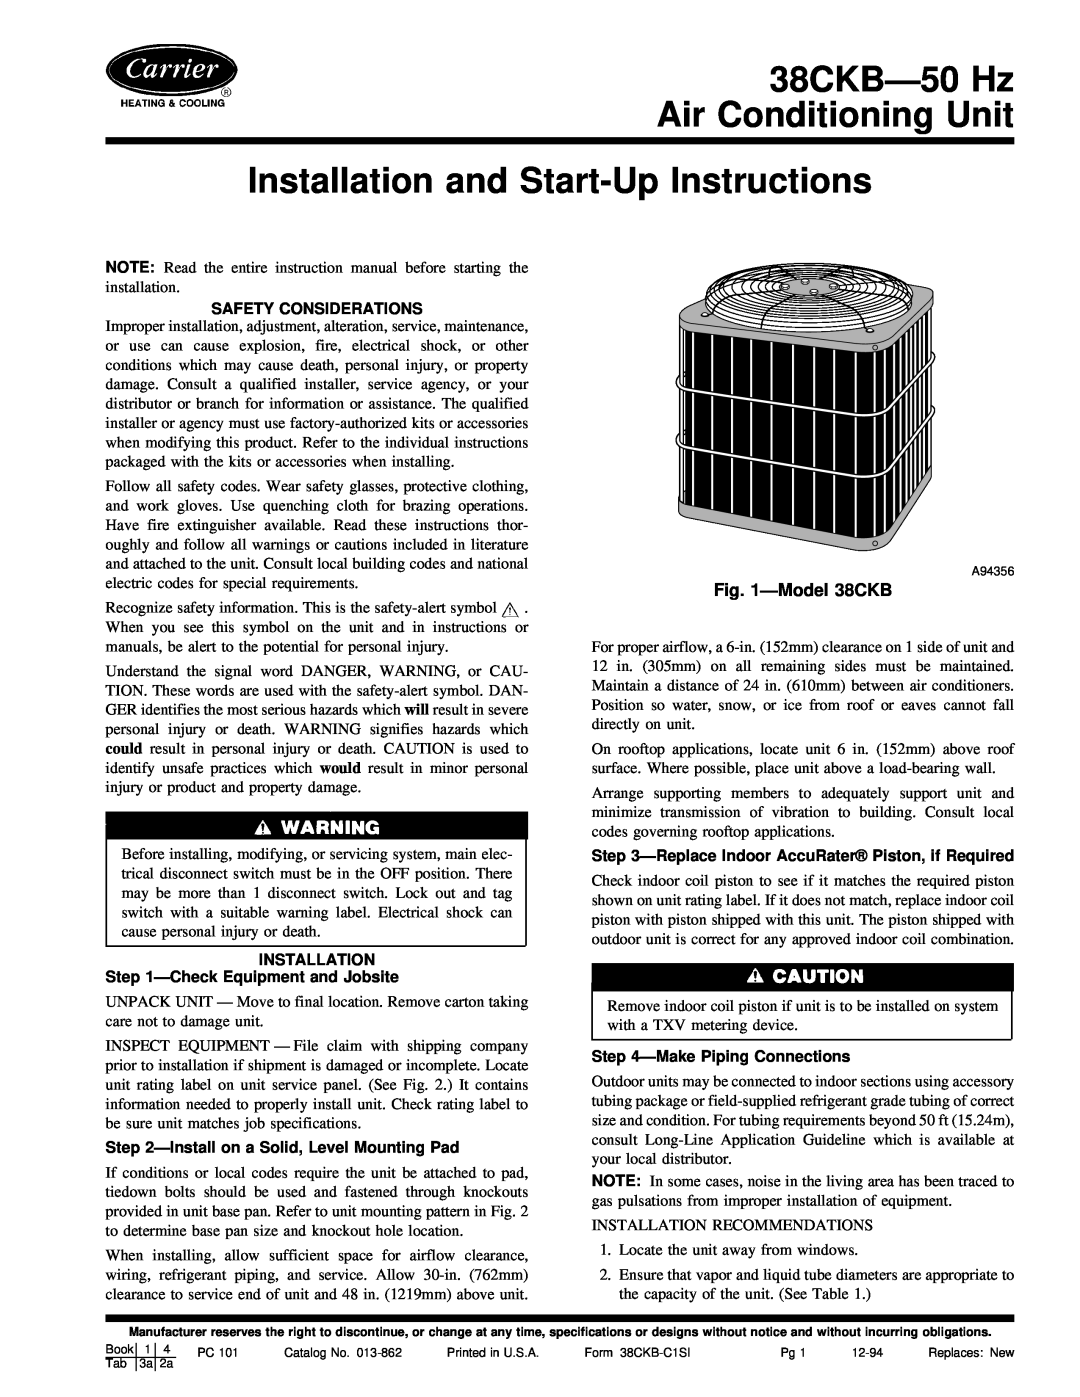 Carrier instruction manual ÐModel 38CKB, Safety Considerations, INSTALLATION ÐCheck Equipment and Jobsite 